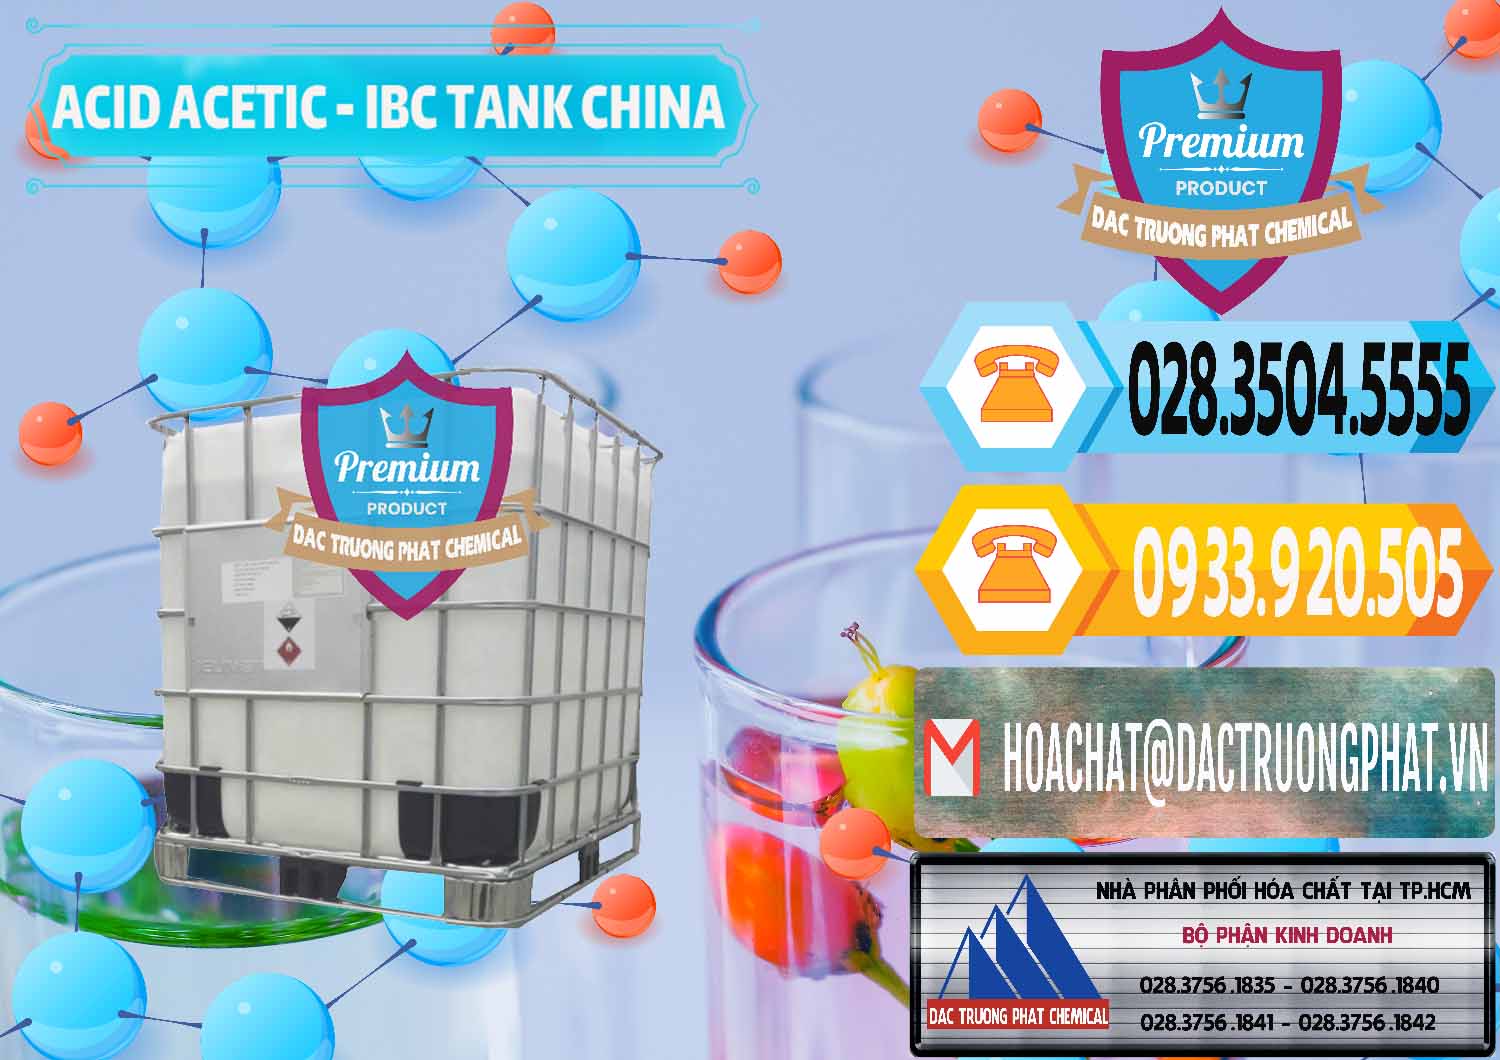 Cty chuyên cung cấp & bán Acetic Acid – Axit Acetic Tank Bồn IBC Trung Quốc China - 0443 - Cty chuyên kinh doanh ( phân phối ) hóa chất tại TP.HCM - hoachattayrua.net